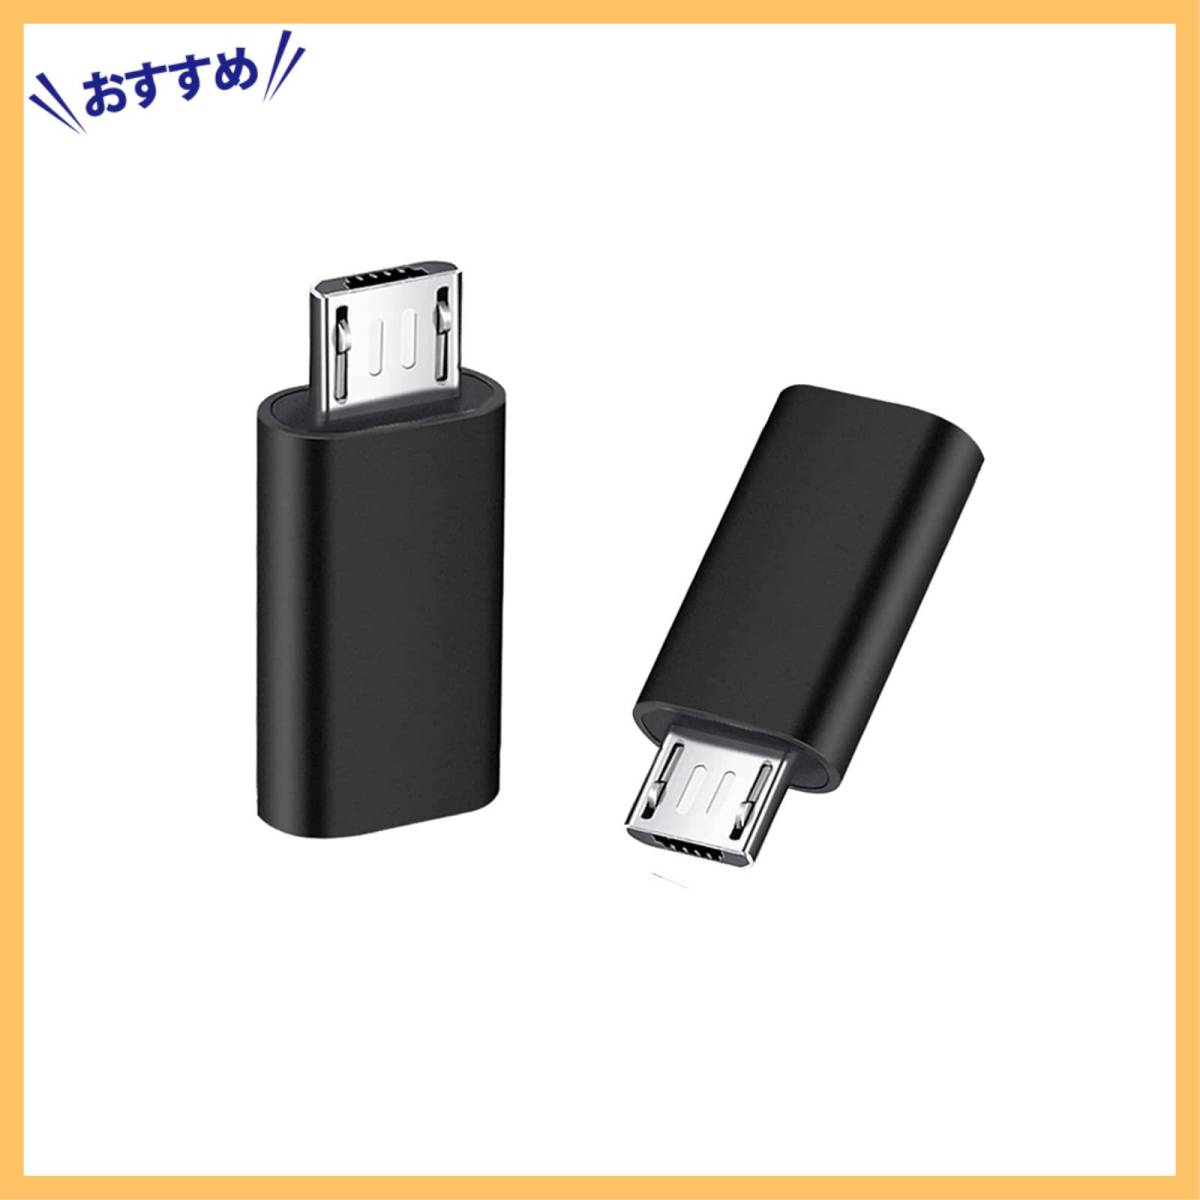 【新着商品】変換アダプタ 2個入り USB Type C メス Micro to Micro タイプC USB オス 変換コネクタ_画像1